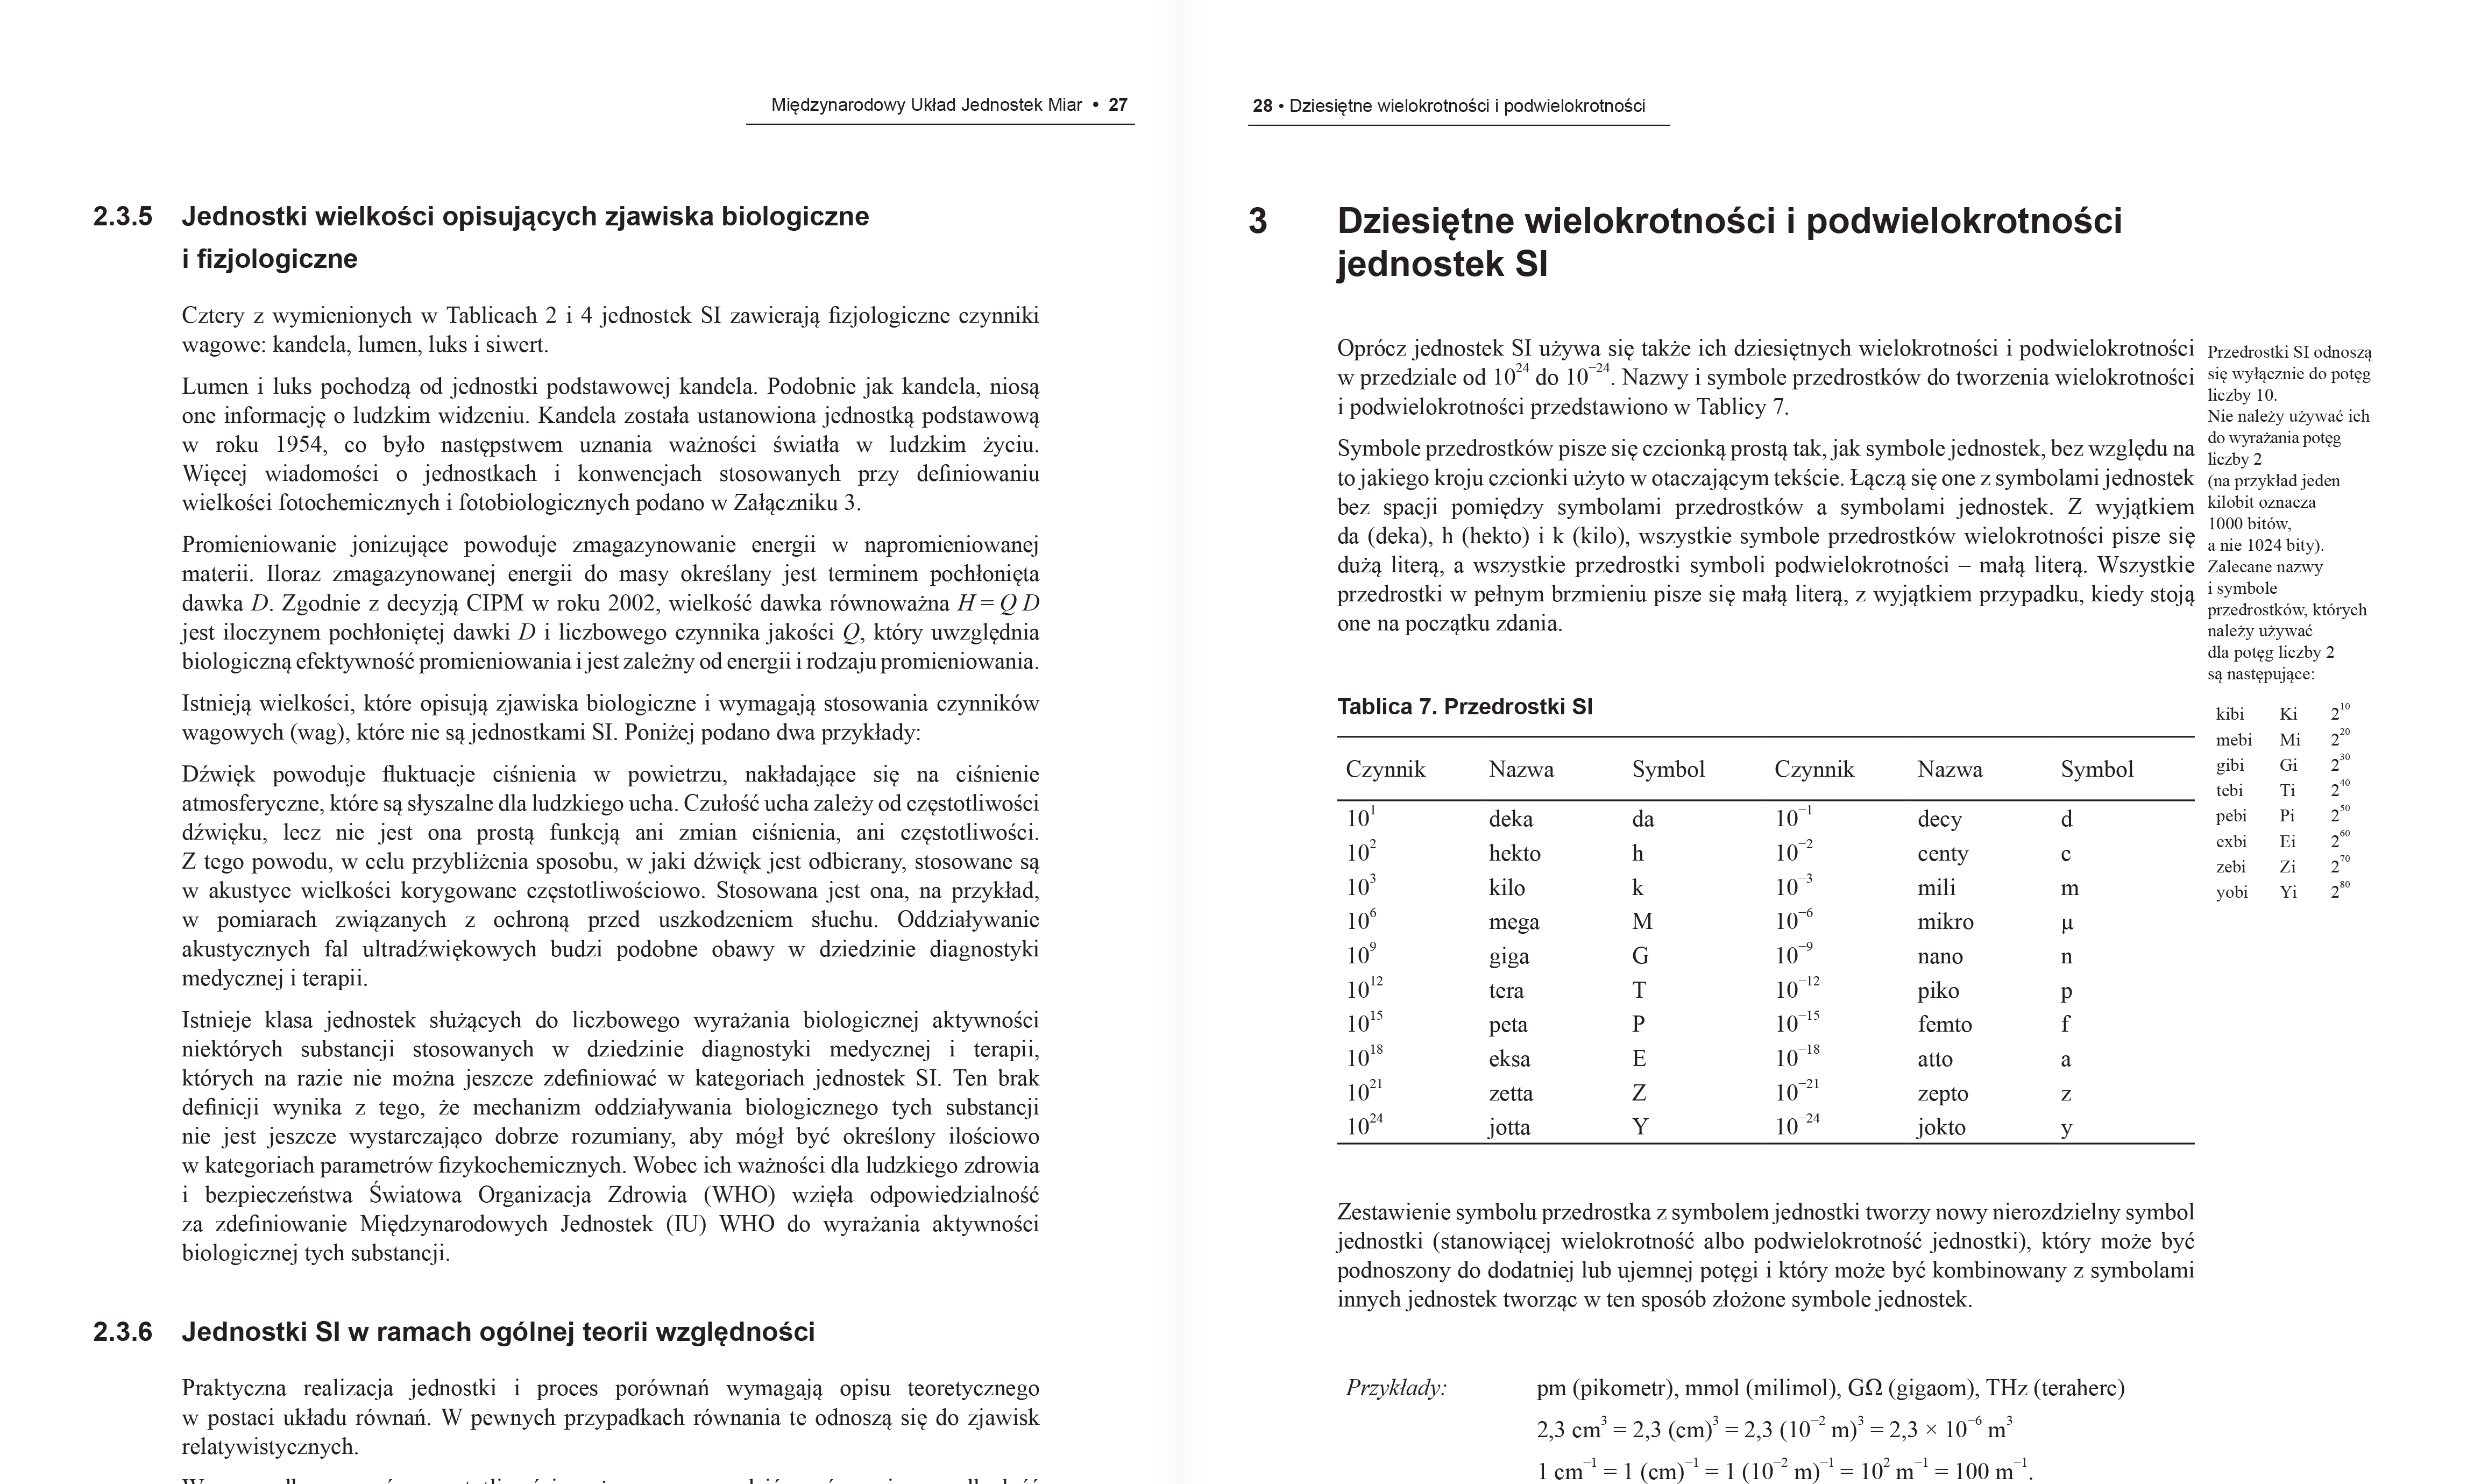 Wnętrze polskiego wydania broszury SI: otwarte na stronach dotyczących dziesiętnych wielokrotności i podwielokrotności jednostek SI.